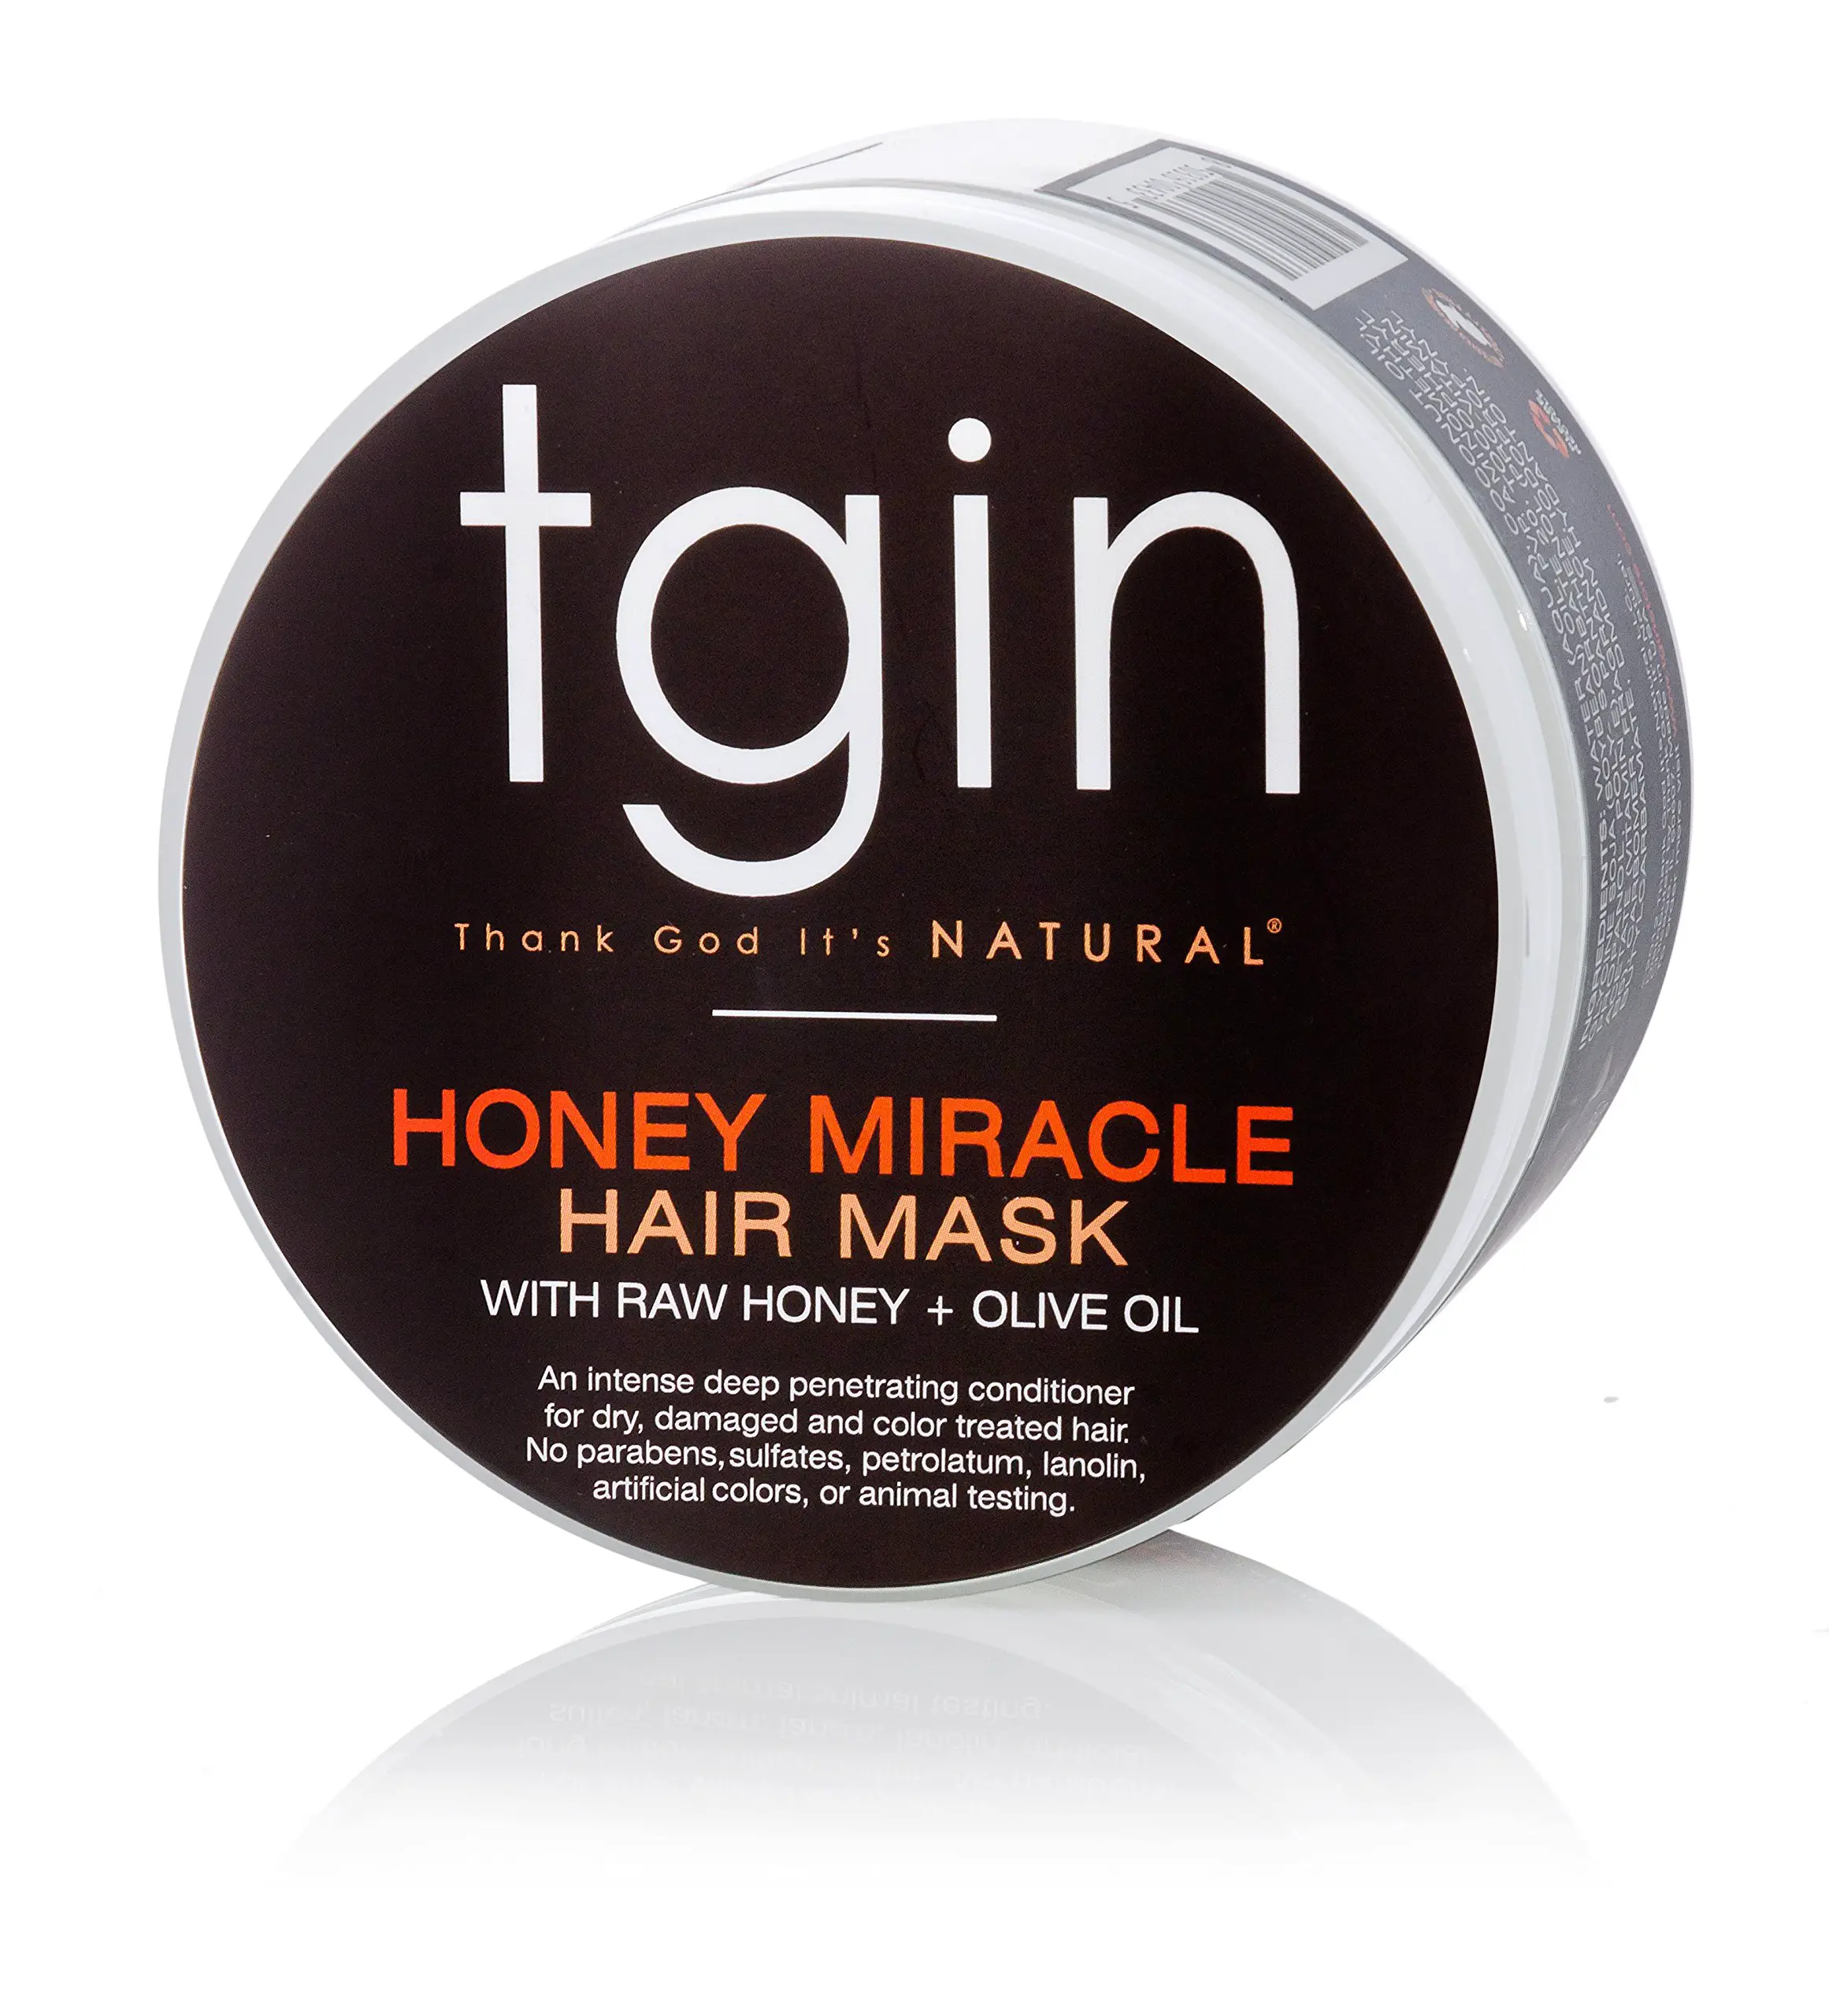 tgin Honey Miracle Hair Mask for Natural Hair - 12 oz